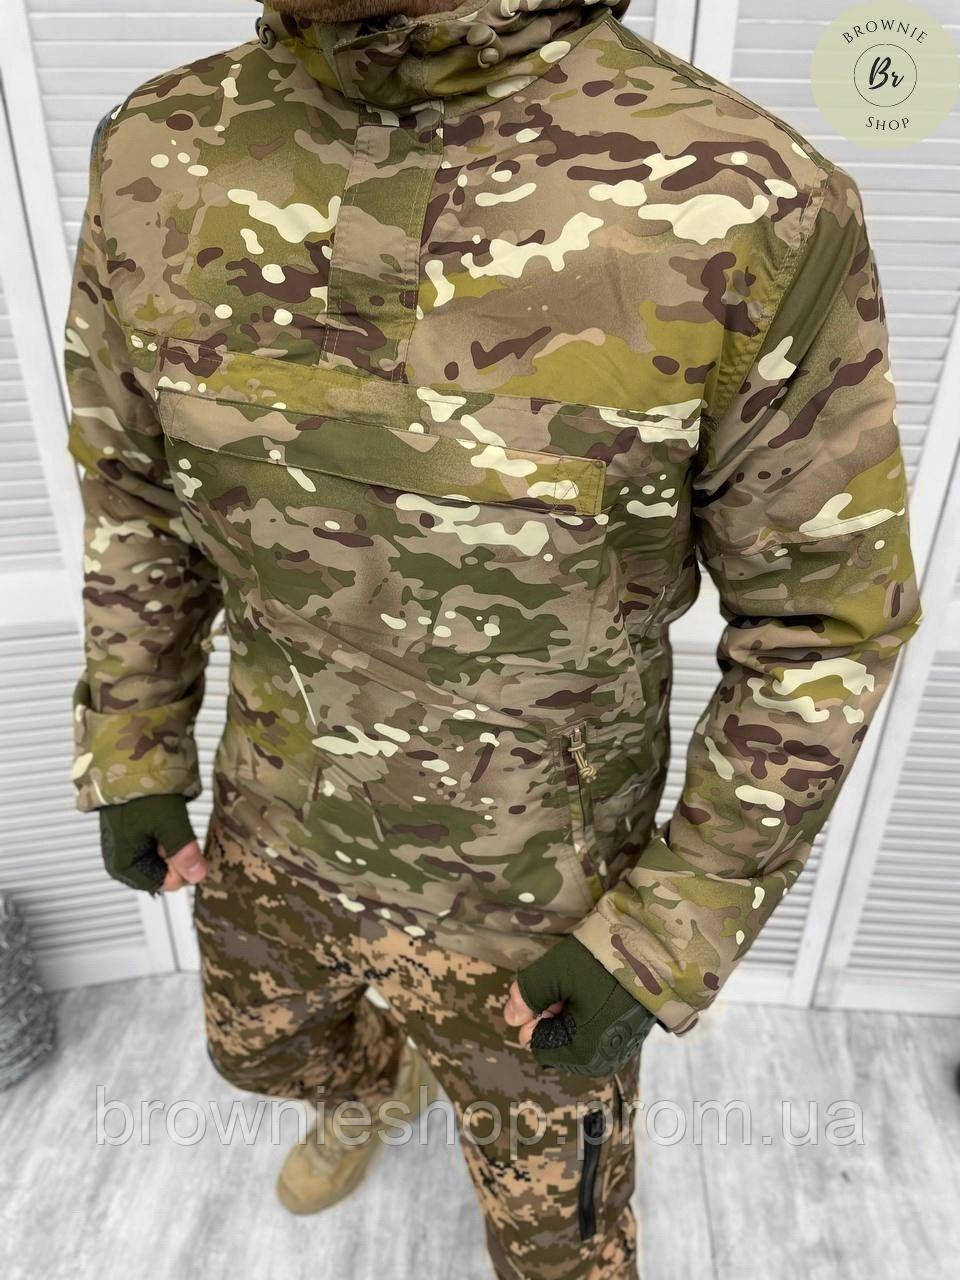 Анорак вітровка на флісі Brandit M65 сезон весна / Військова куртка анорак Brandit на камуфляж(арт. 13386)